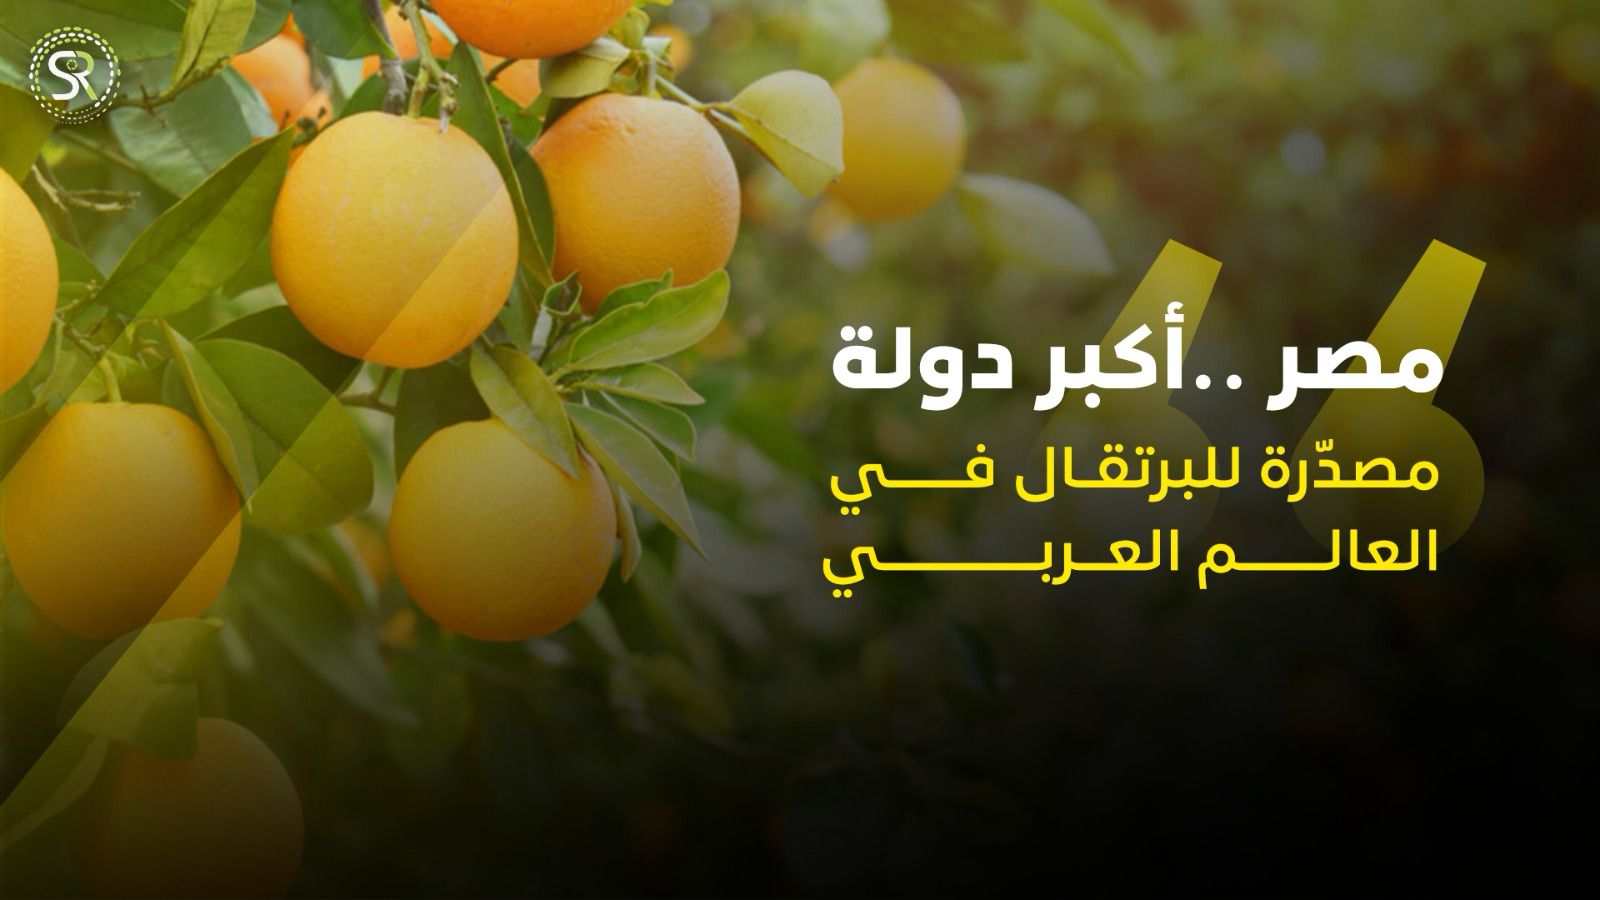 مصر .. أكبر منتج للبرتقال في العالم